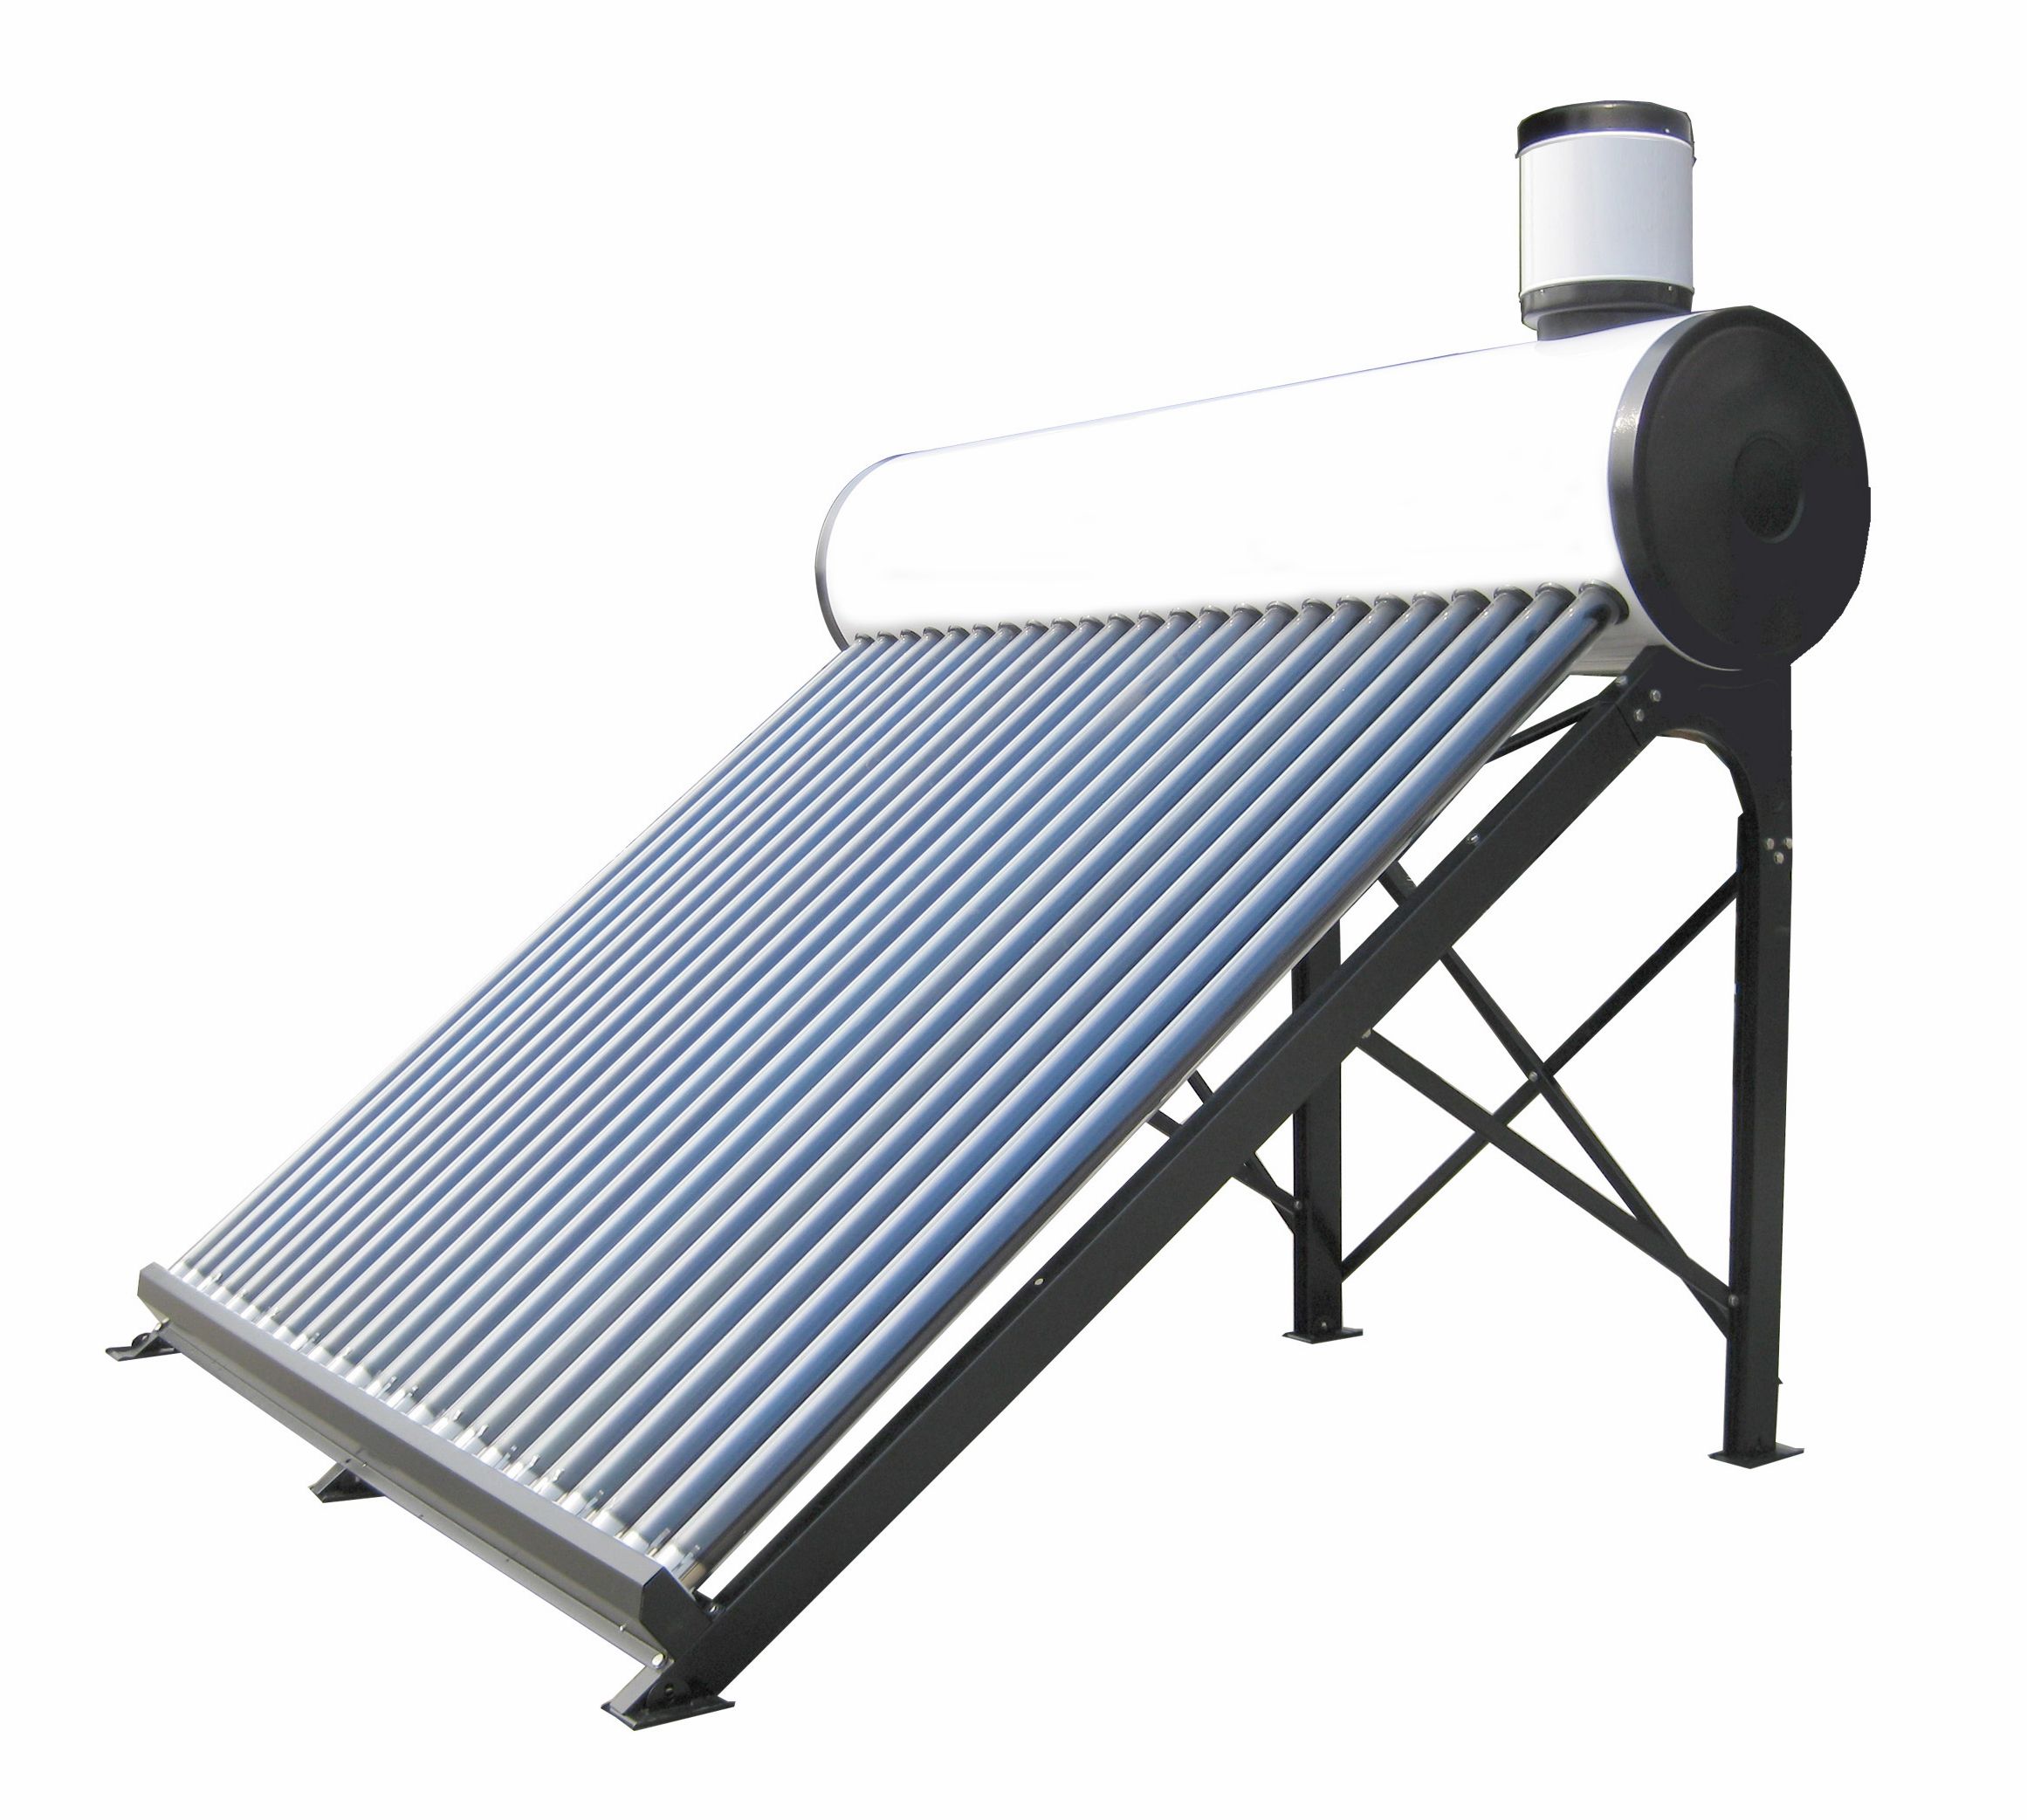 Термосифонный солнечный водонагреватель 200 литров